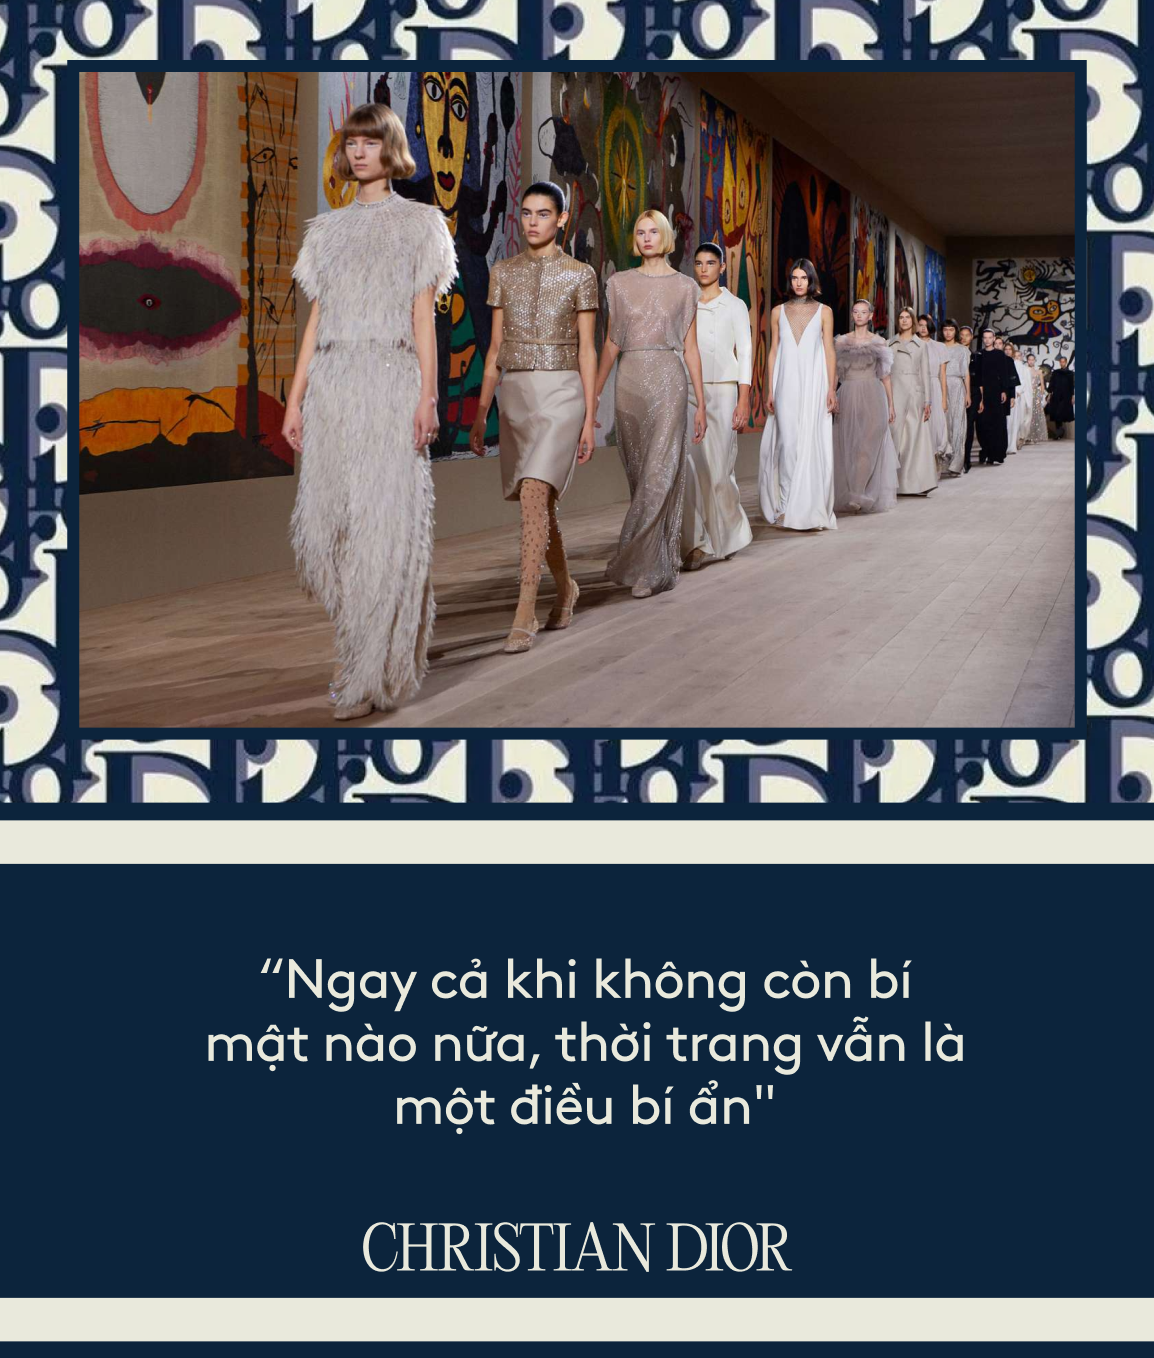 “Ông trùm thời trang” Christian Dior: Nhà mốt làm thay đổi thời trang thế giới, đưa biểu tượng nước Pháp trở thành thương hiệu toàn cầu - Ảnh 5.